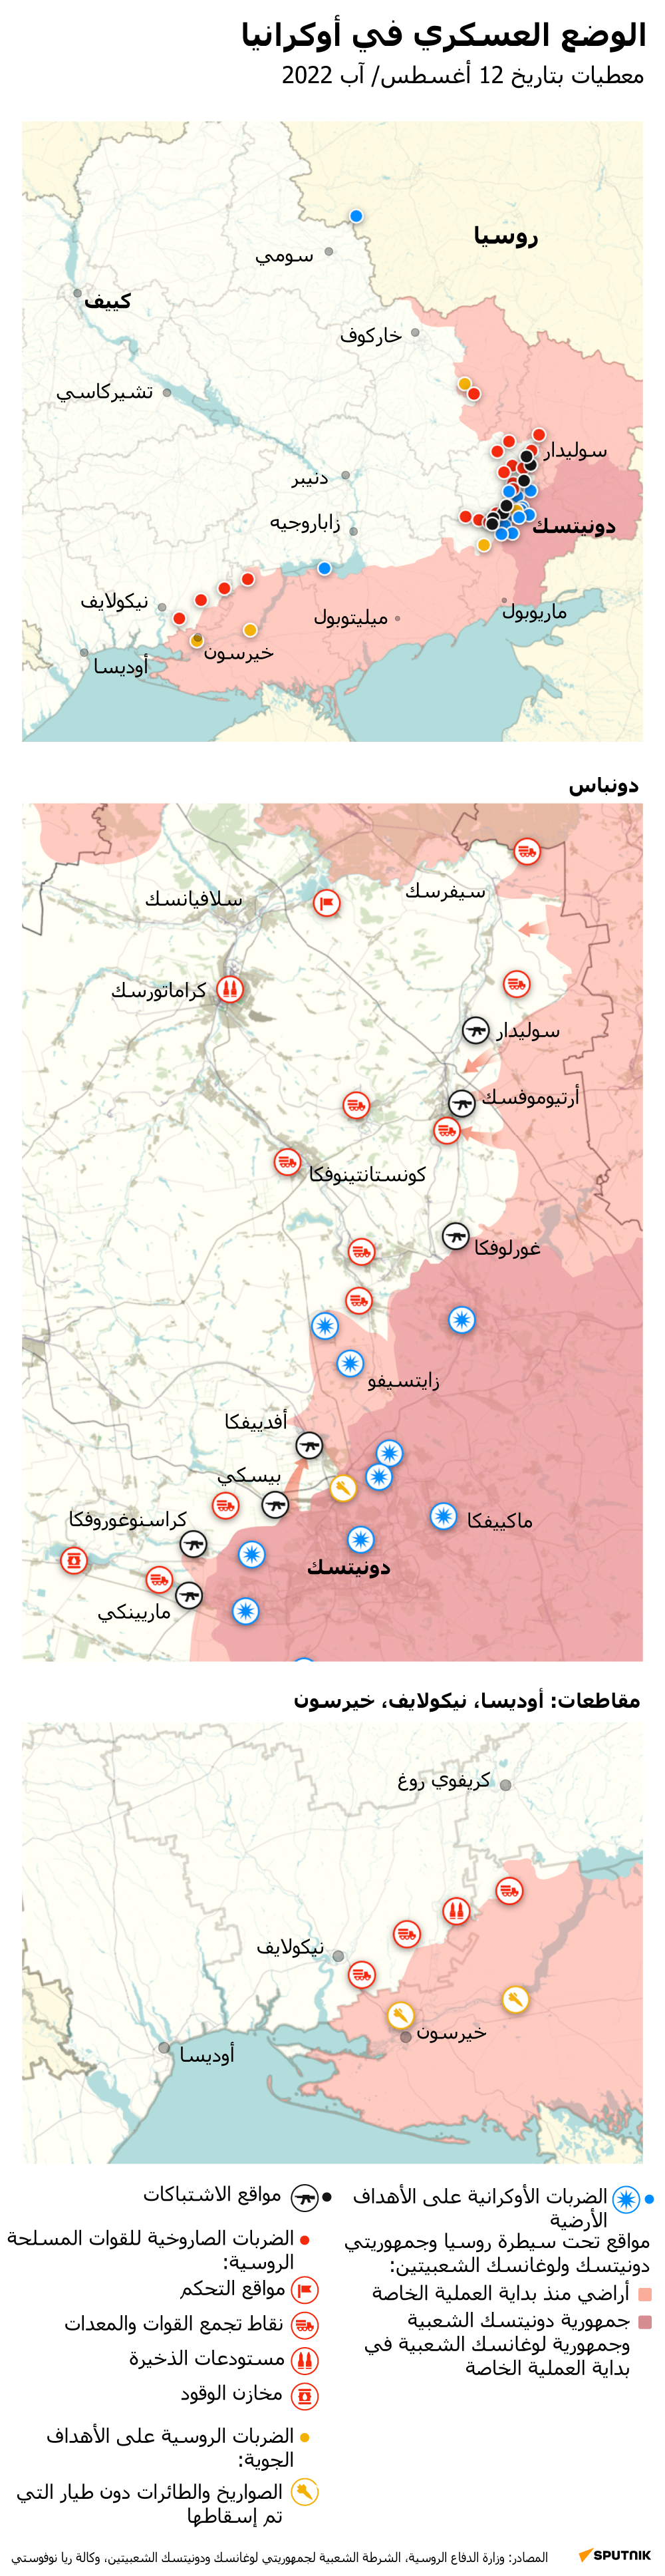 خريطة العملية العسكرية الروسية الخاصة في أوكرانيا ليوم 12 أغسطس 2022 - سبوتنيك عربي